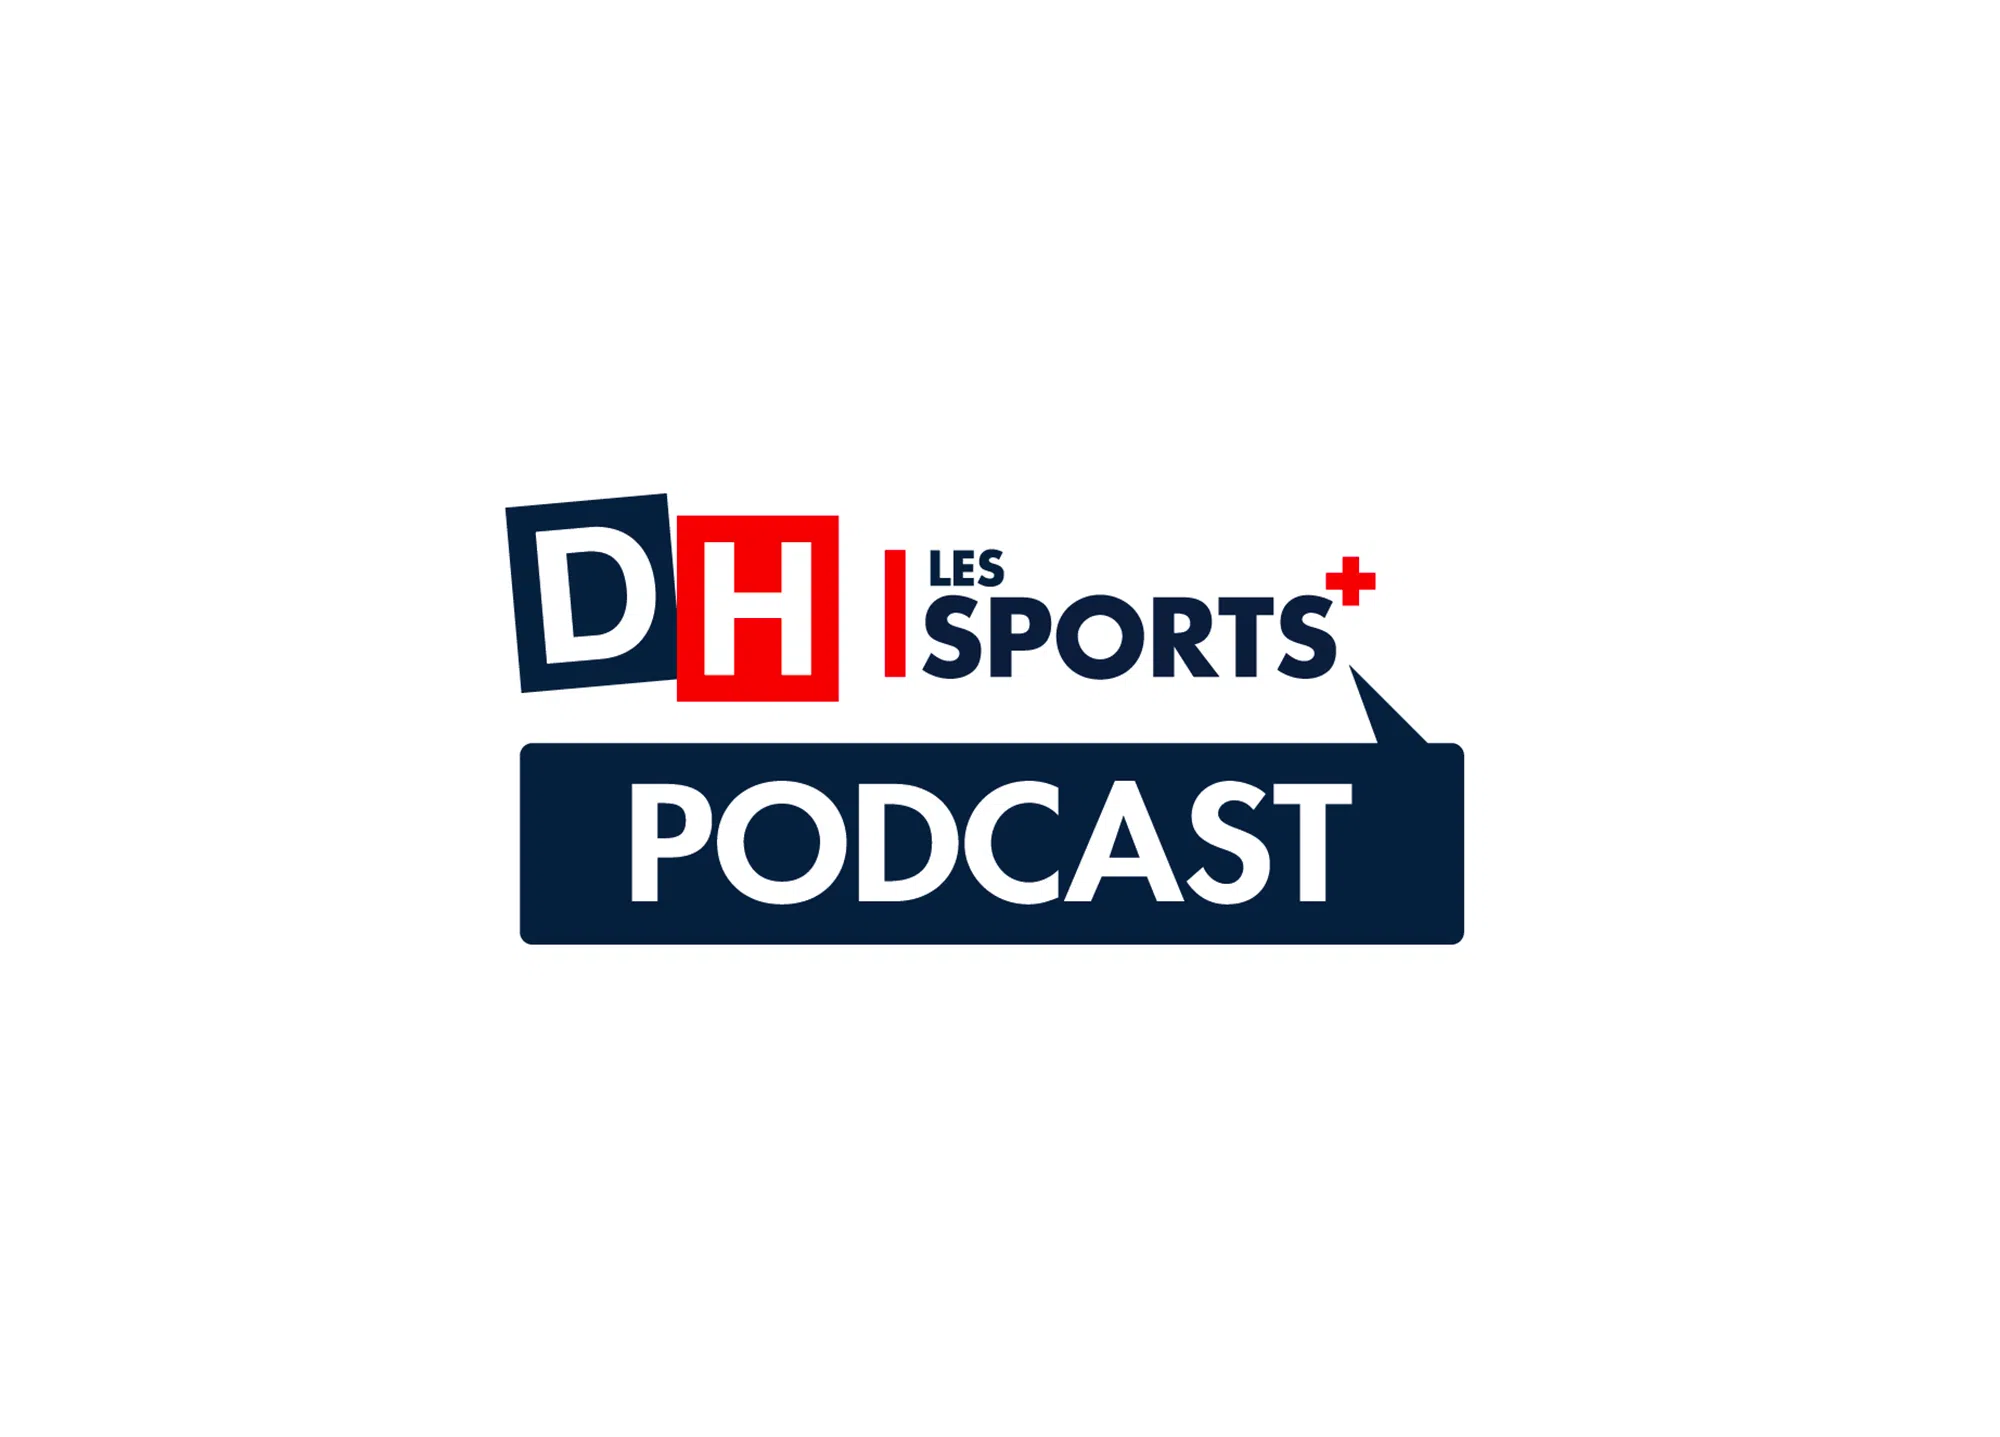 Logo podcast dh les sports plus